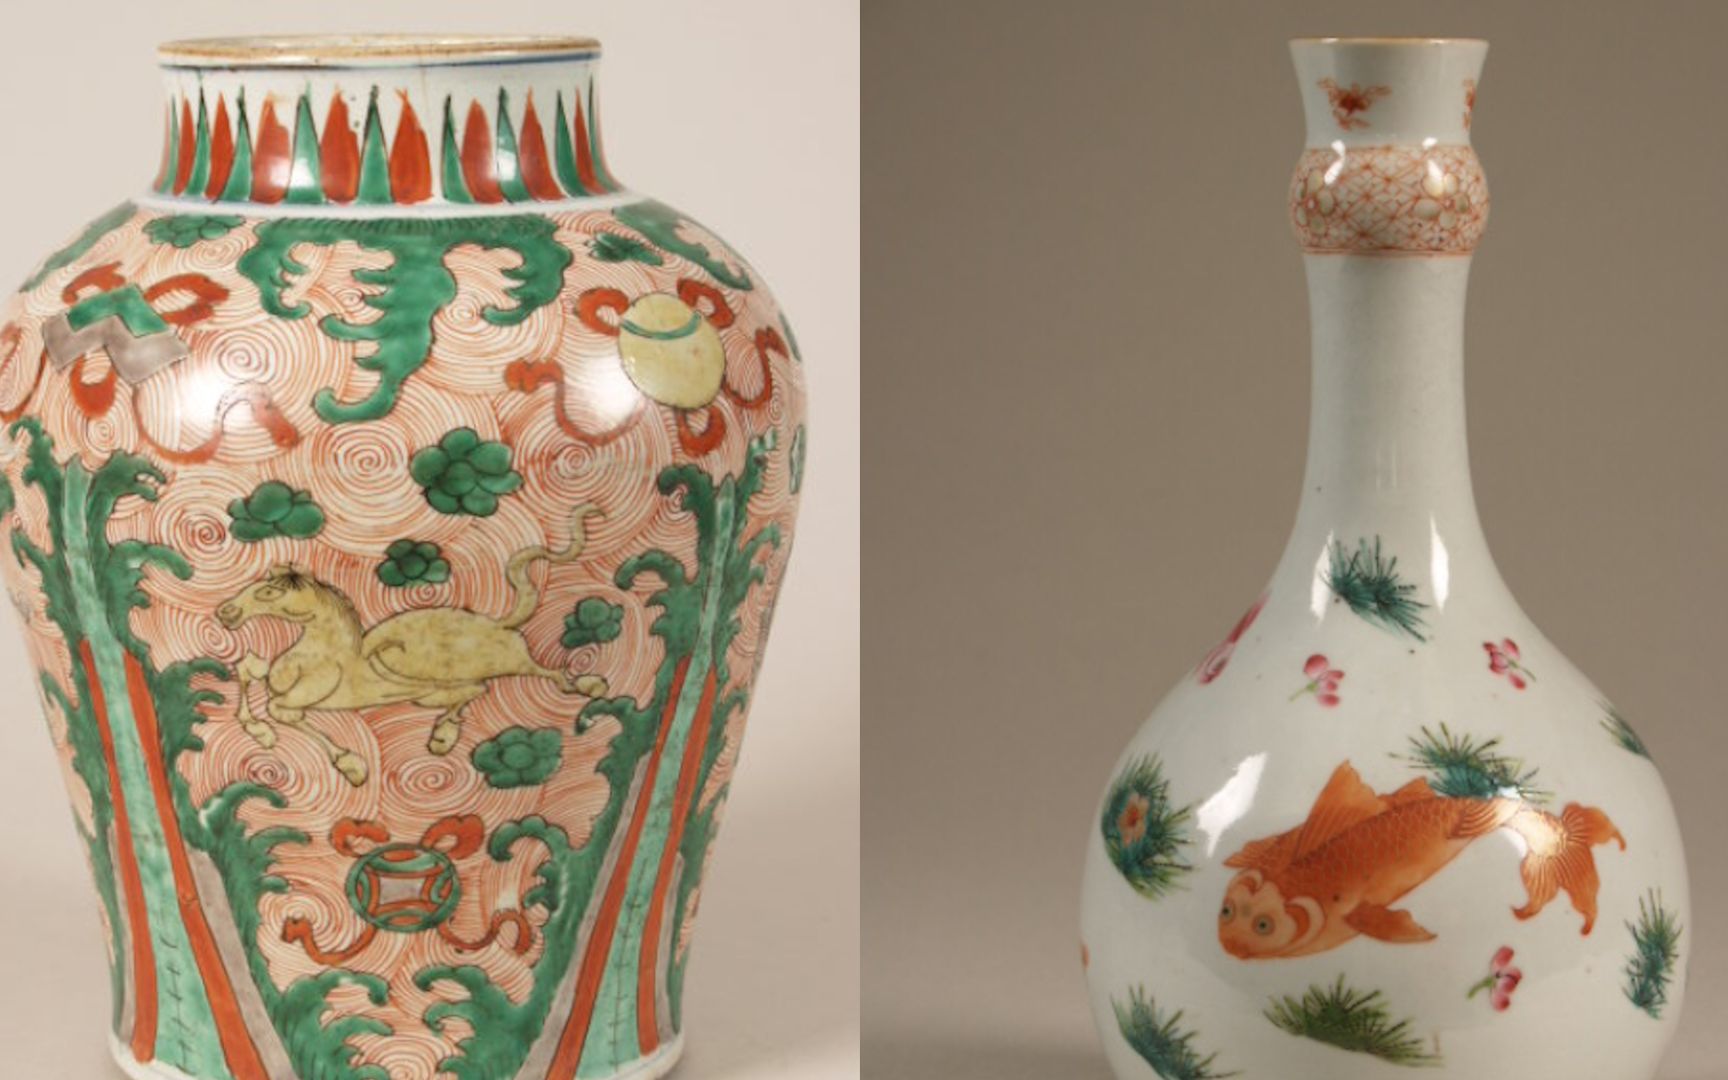 荷兰一博物馆遭遇盗窃：4件中国明代稀有瓷器被盗、7件遭损毁